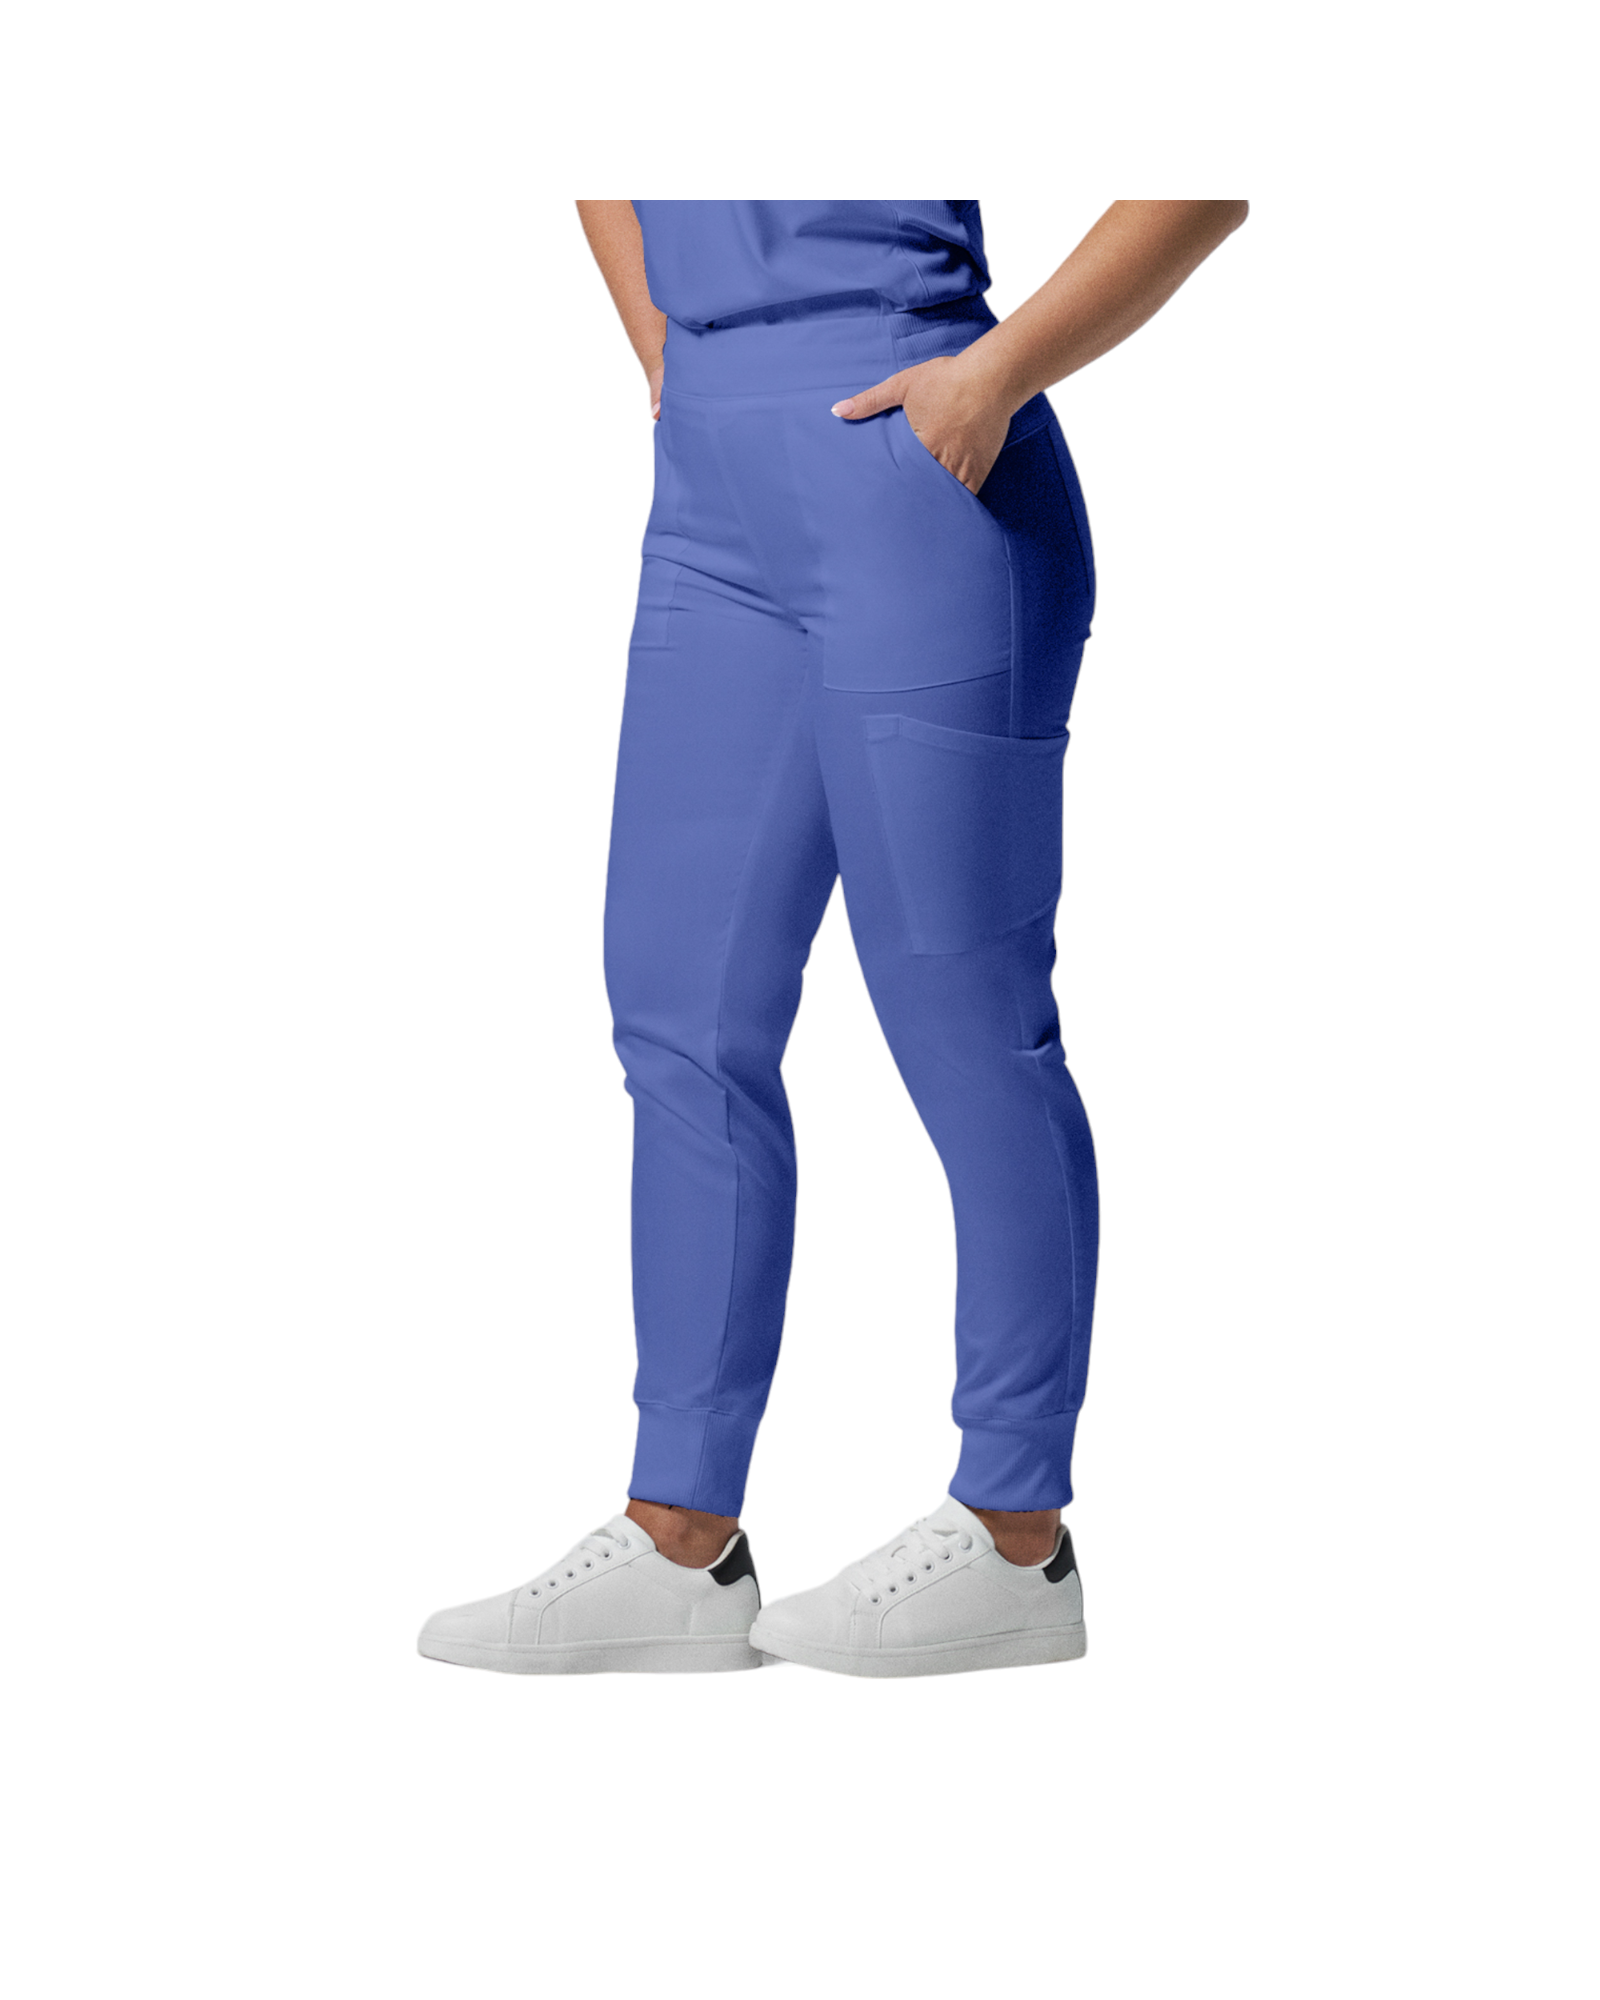 Pantalon de style jogger 6 poches pour femmes Landau Proflex #LB406-OS couleur Bleu ciel